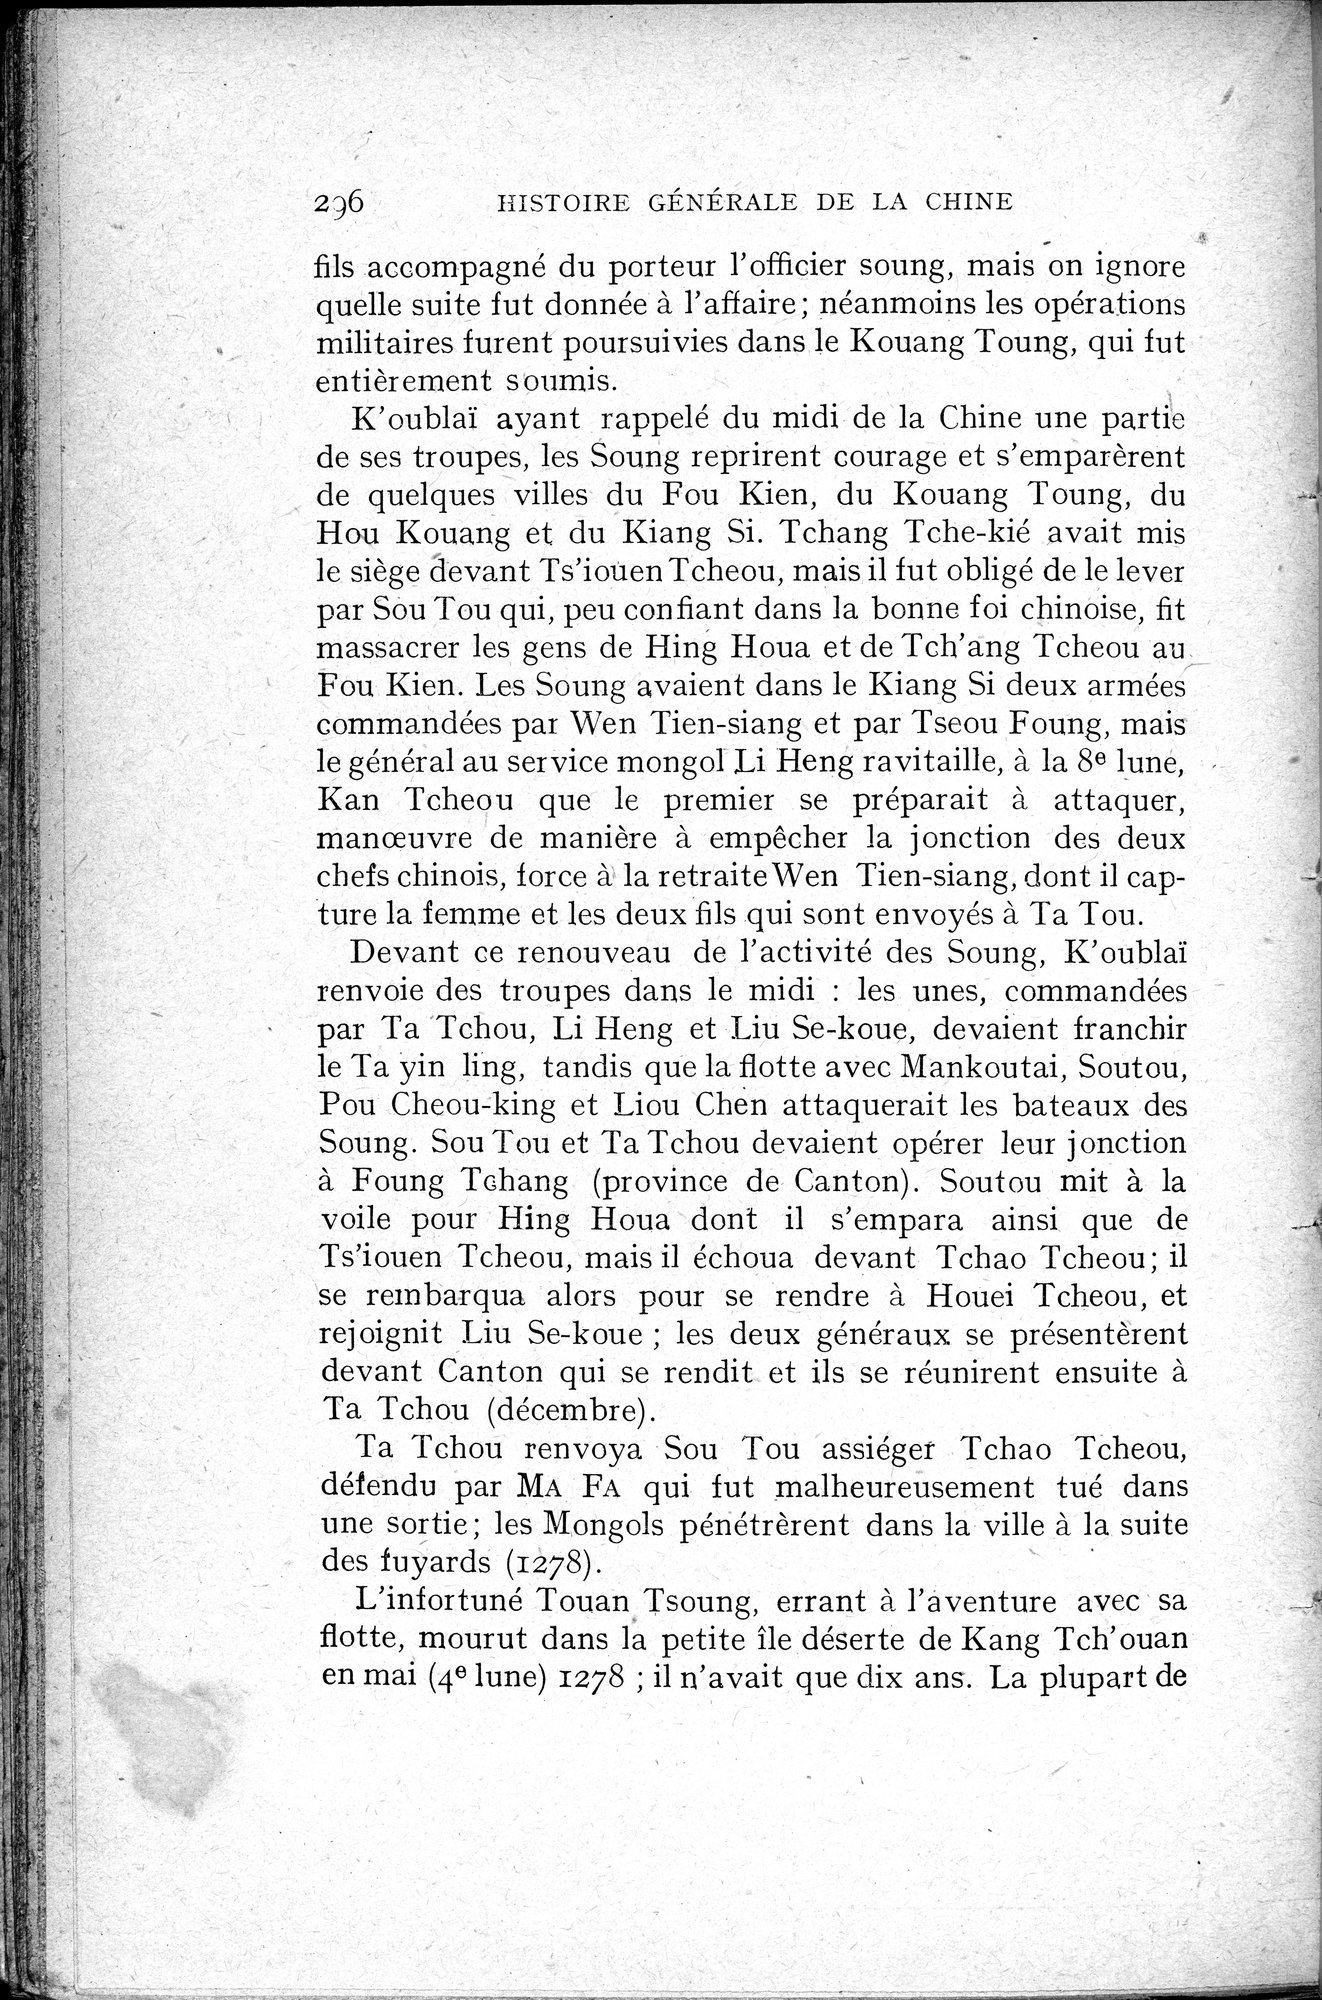 Histoire Générale de la Chine : vol.2 / Page 298 (Grayscale High Resolution Image)